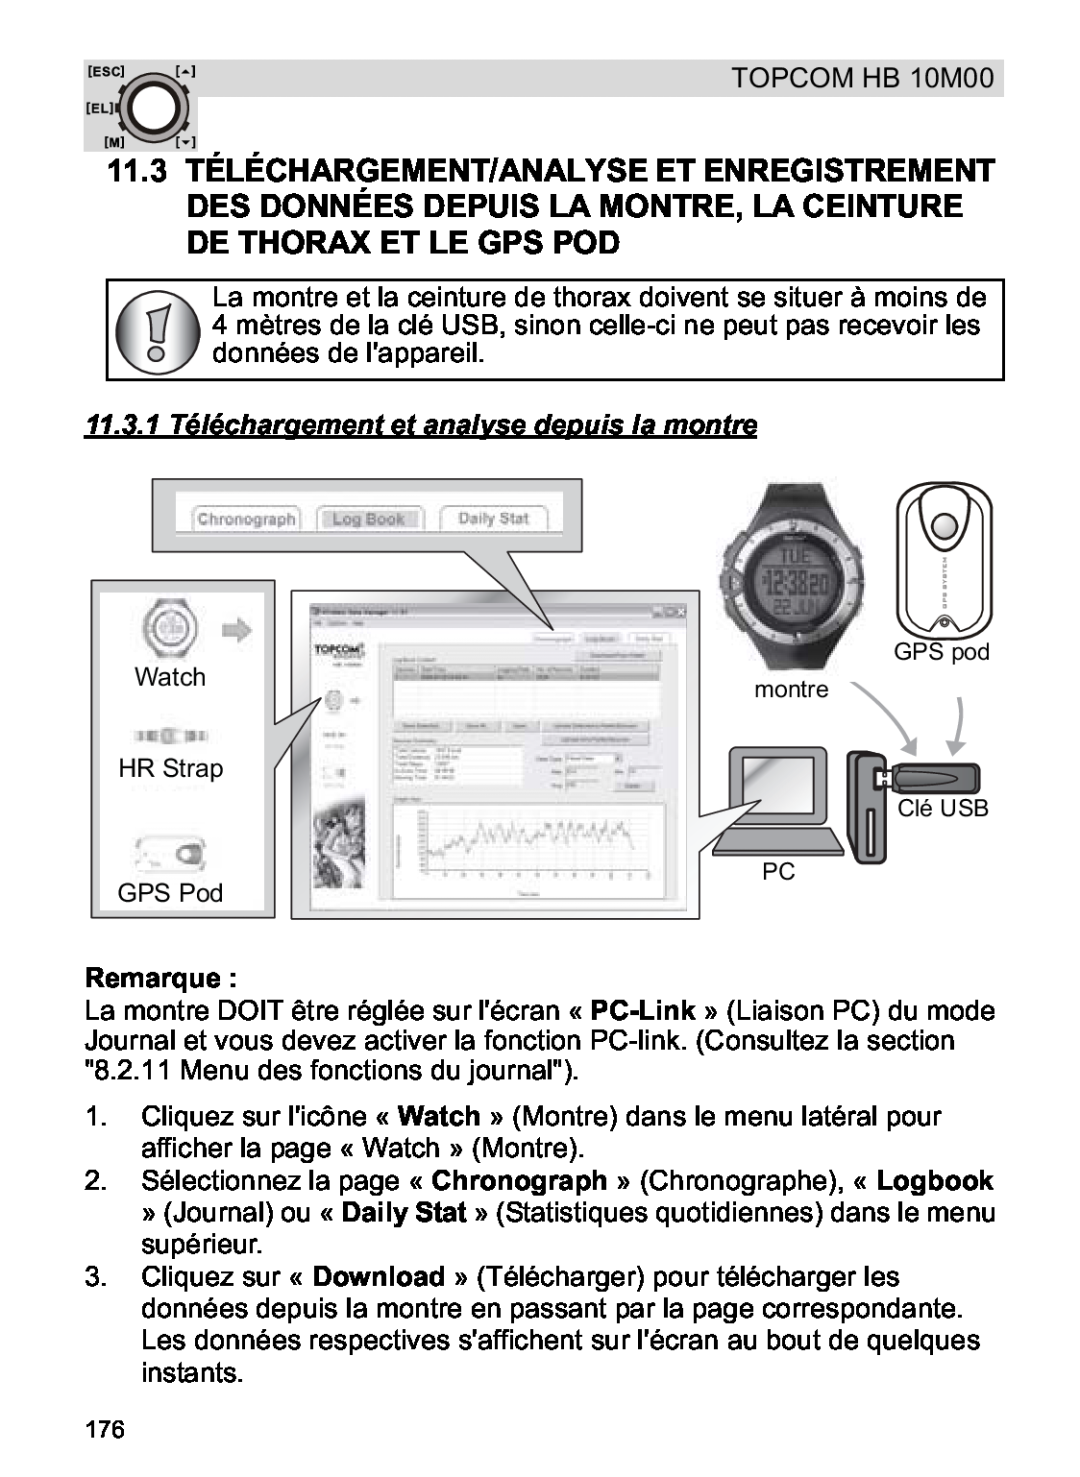 Topcom HB 10M00 manual 11.3.1 Téléchargement et analyse depuis la montre, Watch HR Strap GPS Pod, Remarque 